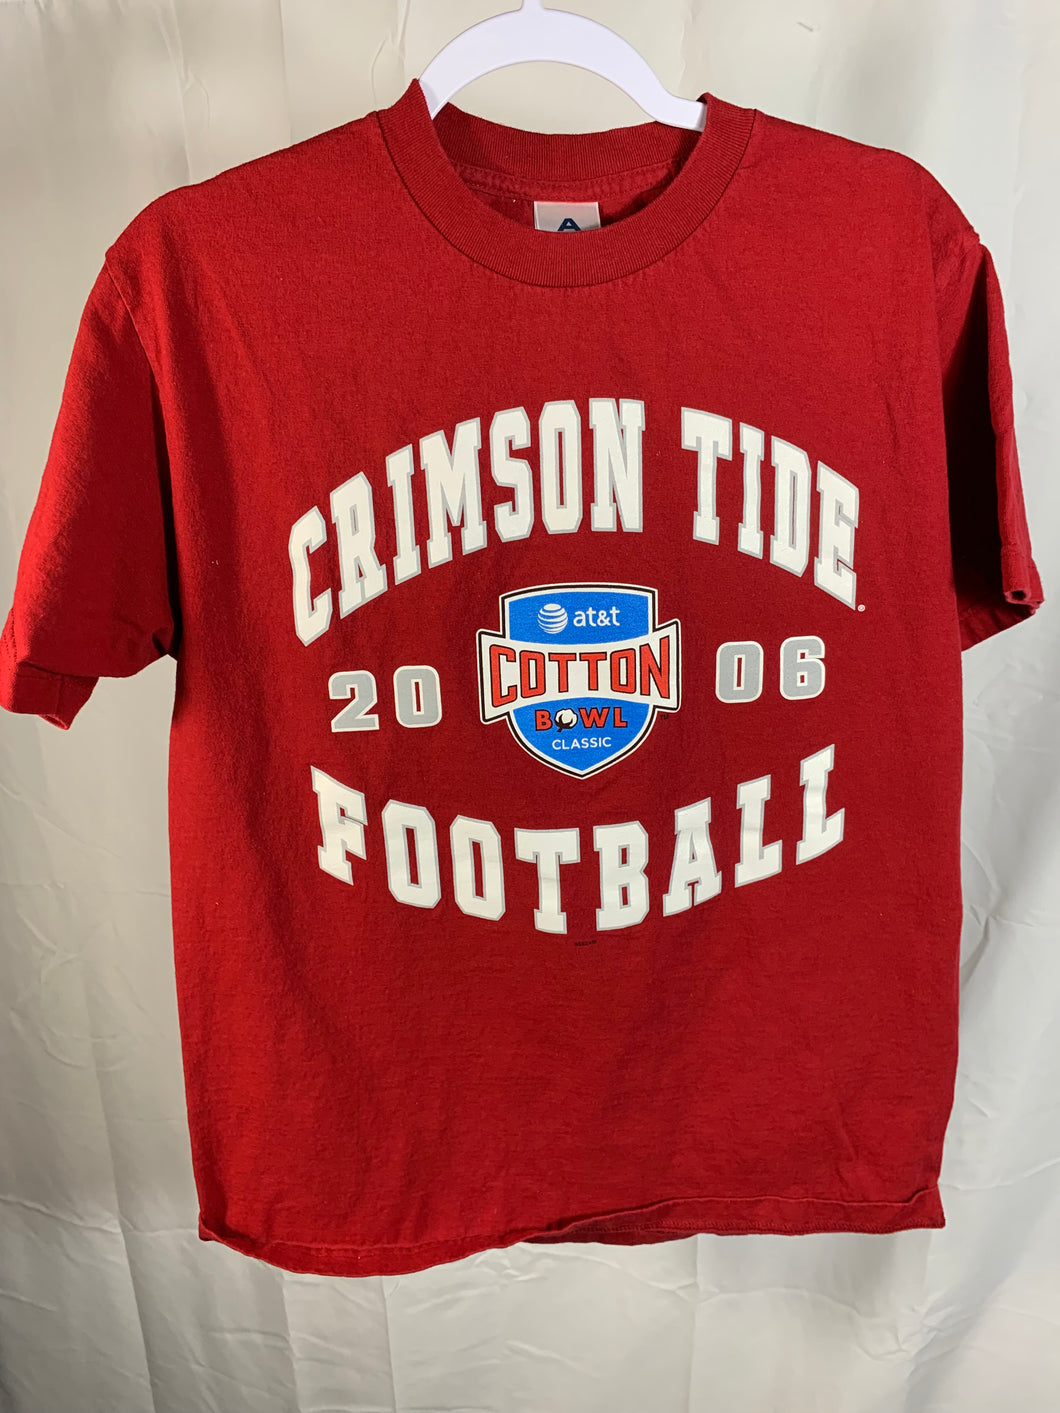 2006 Alabama Cotton Bowl T-Shirt Medium